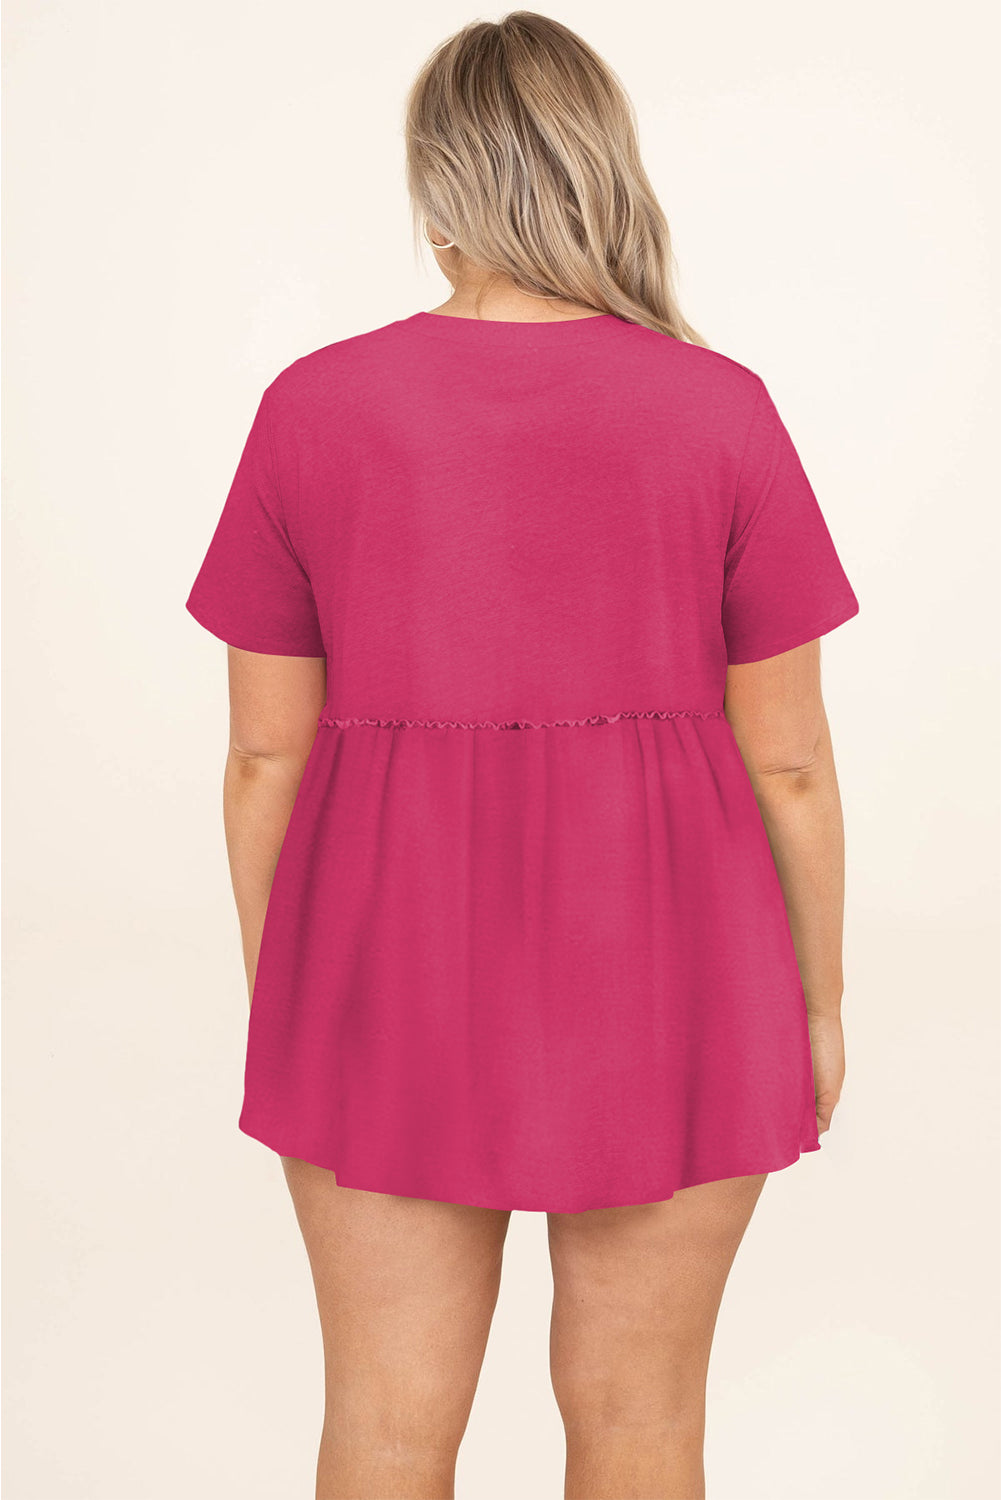 Ružičastocrvena jednobojna lepršava majica s kratkim rukavima veće veličine